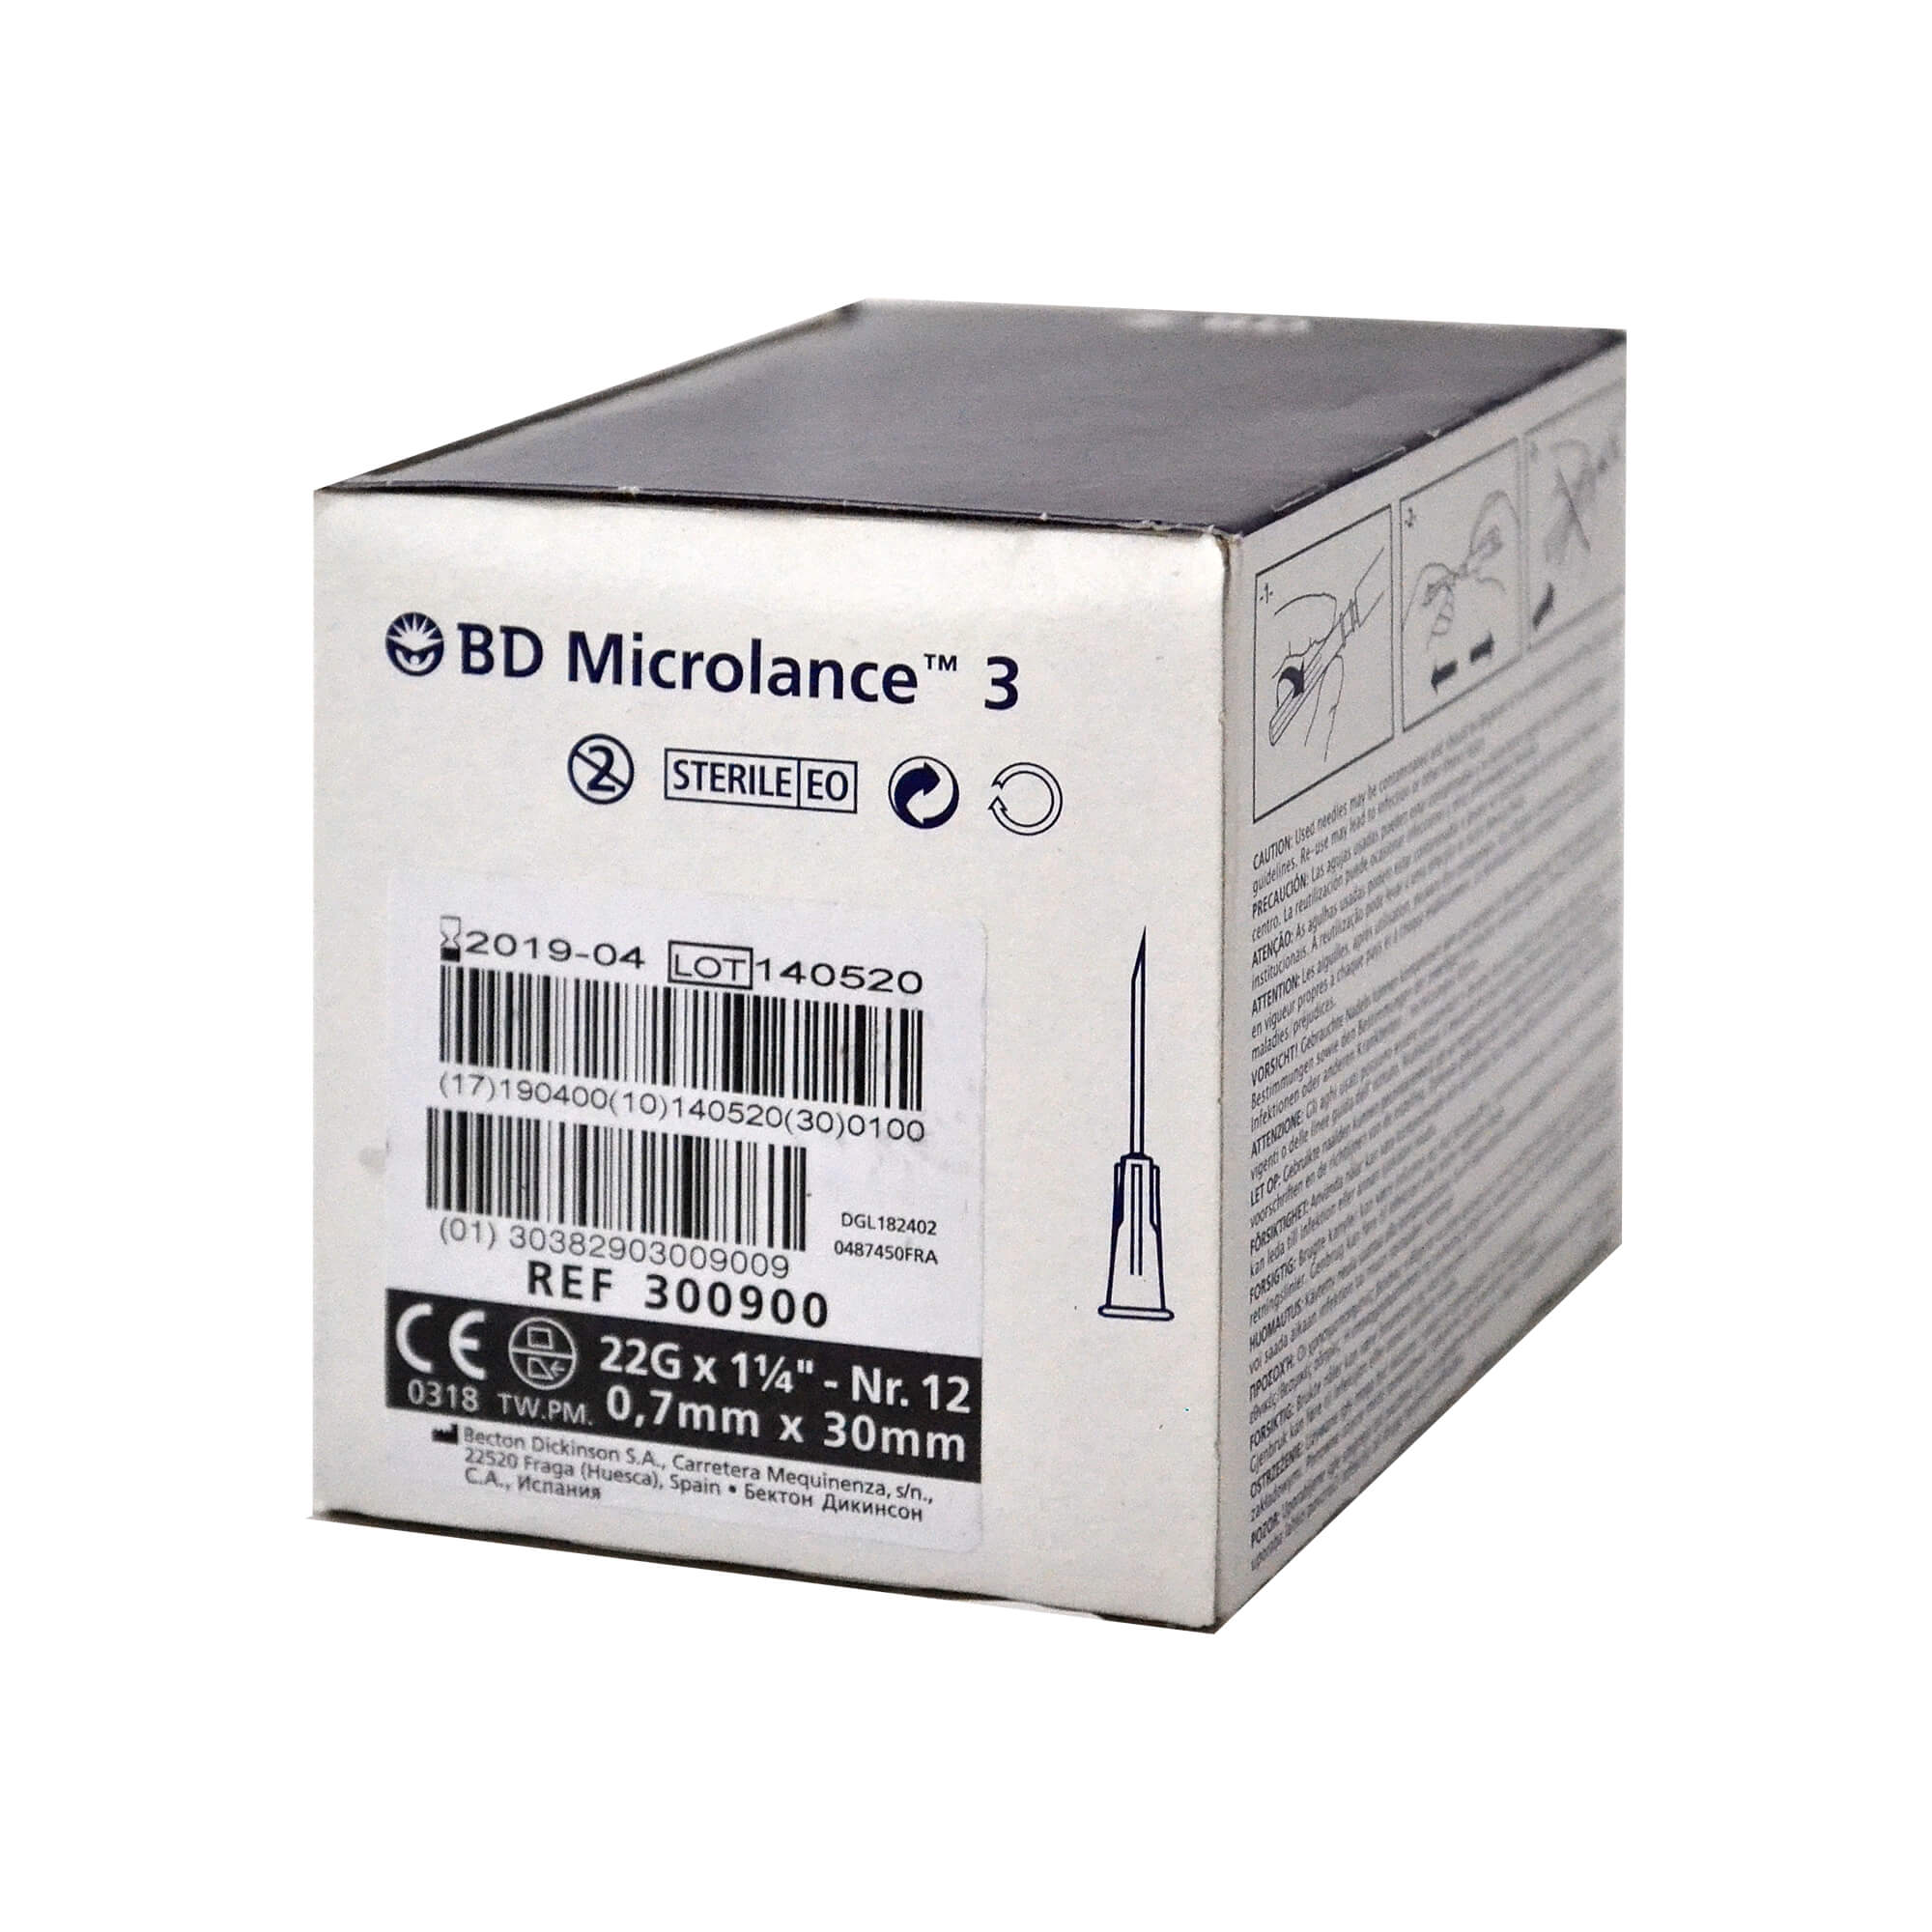 BD Microlance 3 Kanüle, 22 G x 1 1/4", Nr. 12, 0,7 mm x 30 mm.